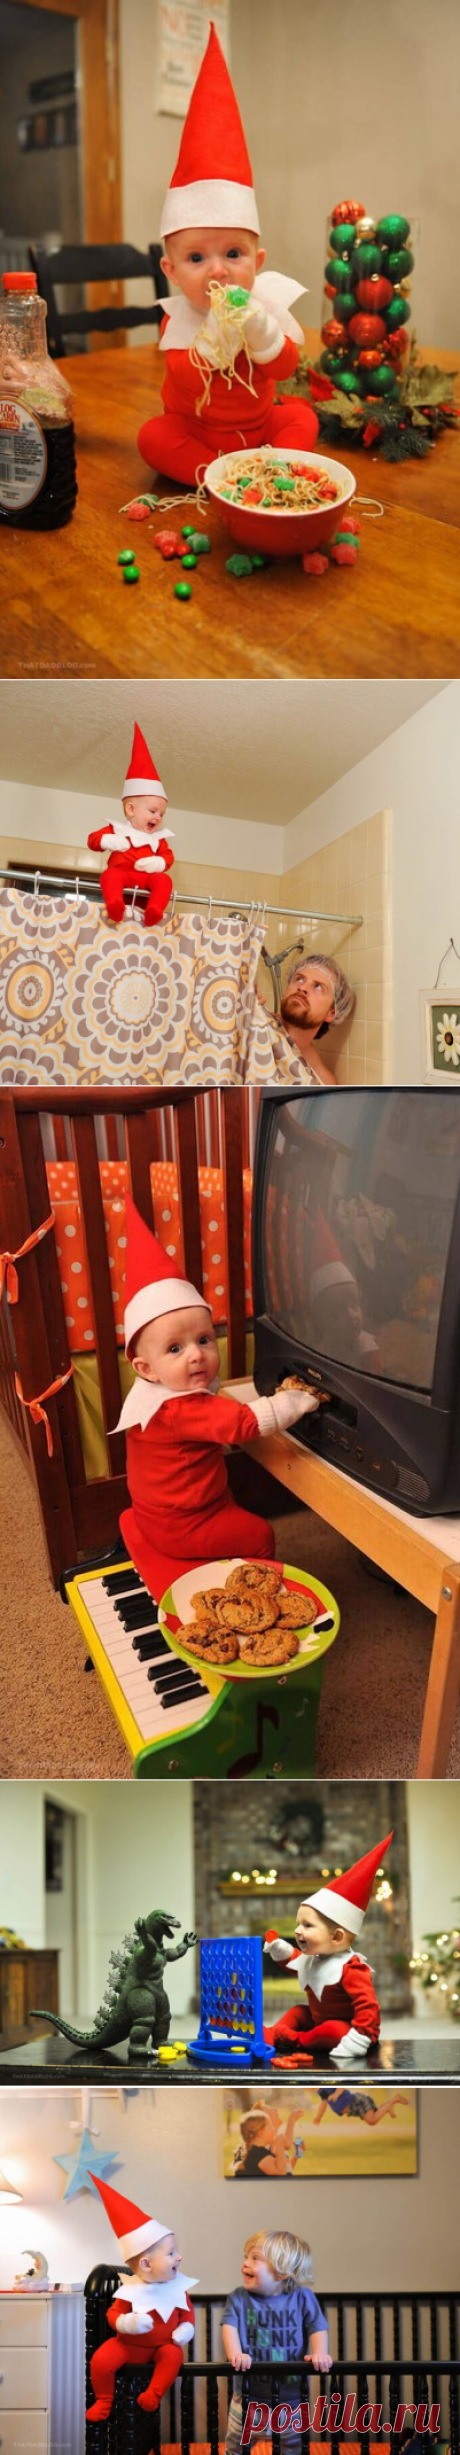 Папа превратил ребенка в помощника Санты в новогодней фотосессии 🎅